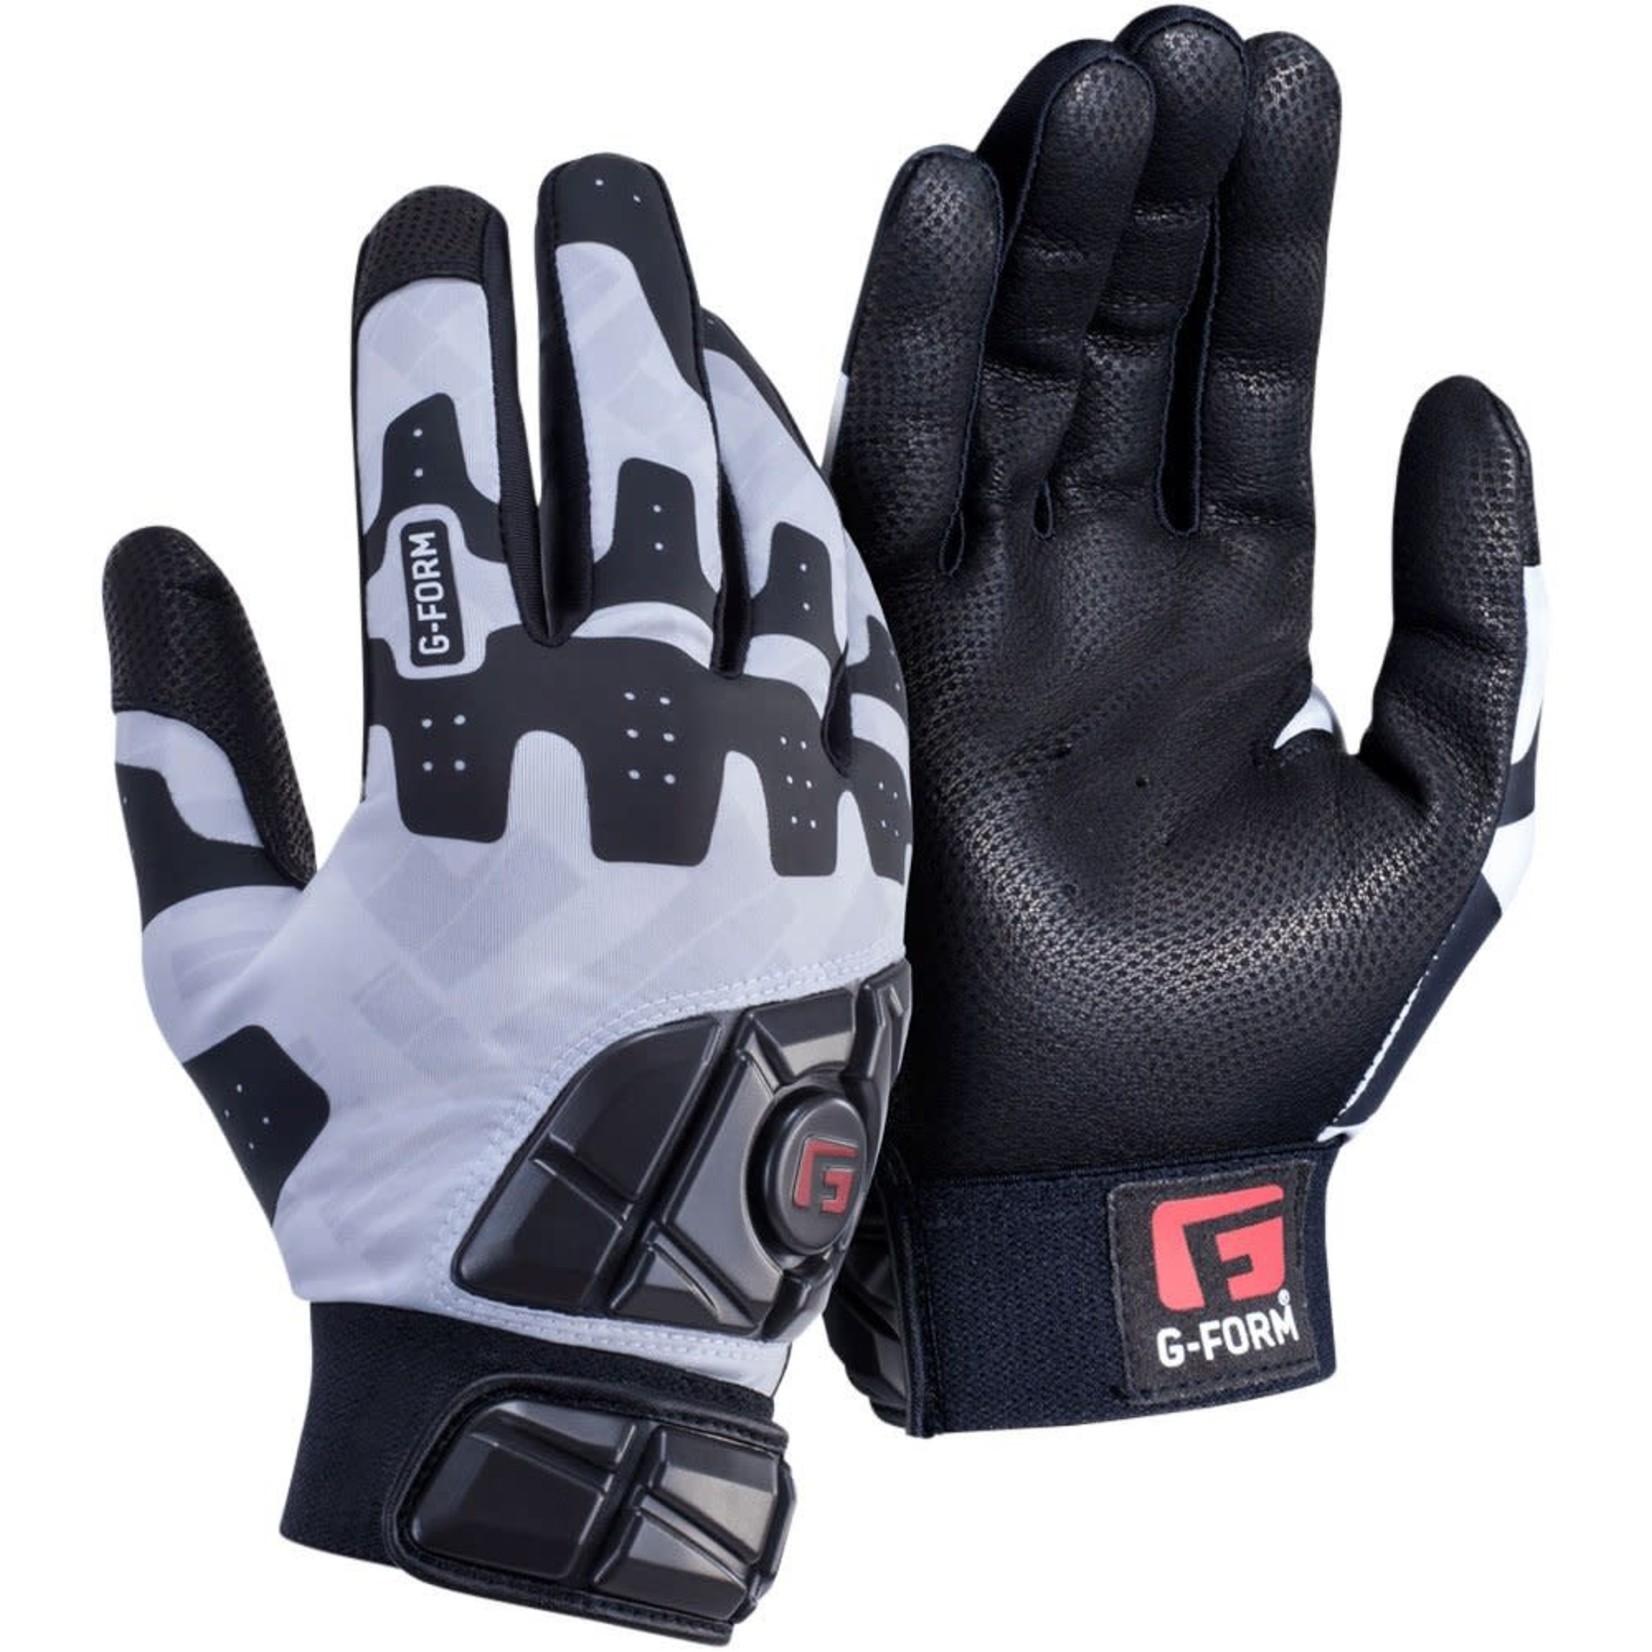 G-Form G-Form Adult Pro Batting Gloves